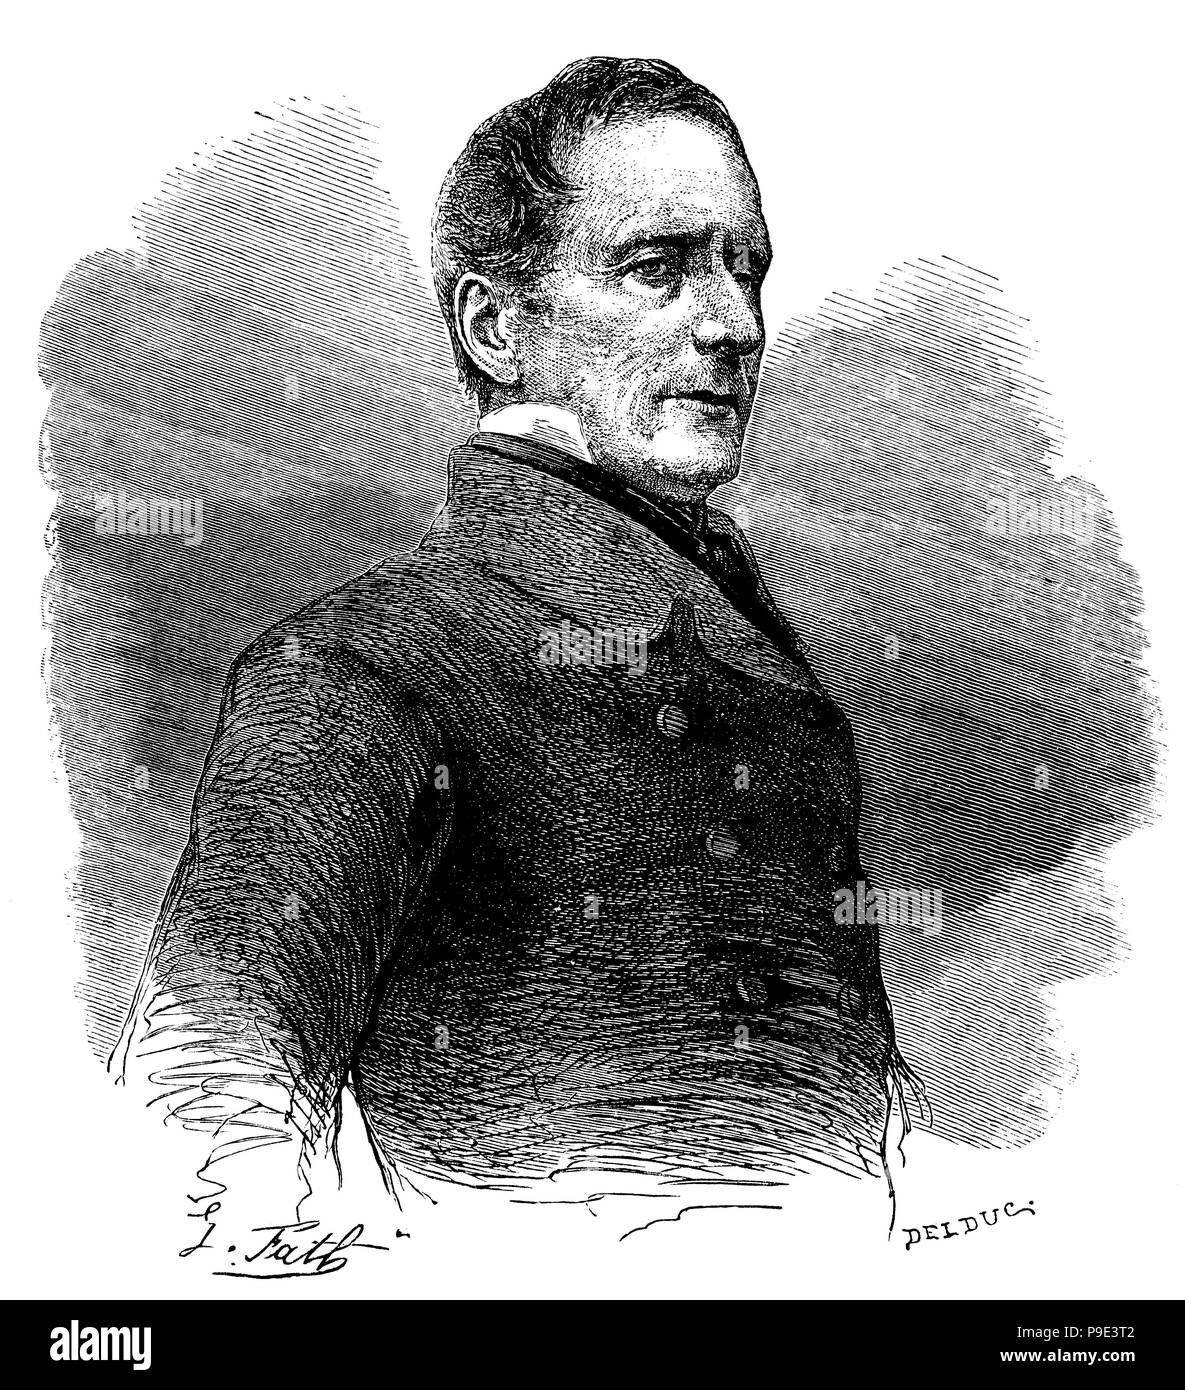 Alphonse de Lamartine (1790-1869), escritor, poeta romántico y político francés. Grabado de 1865. Stock Photo